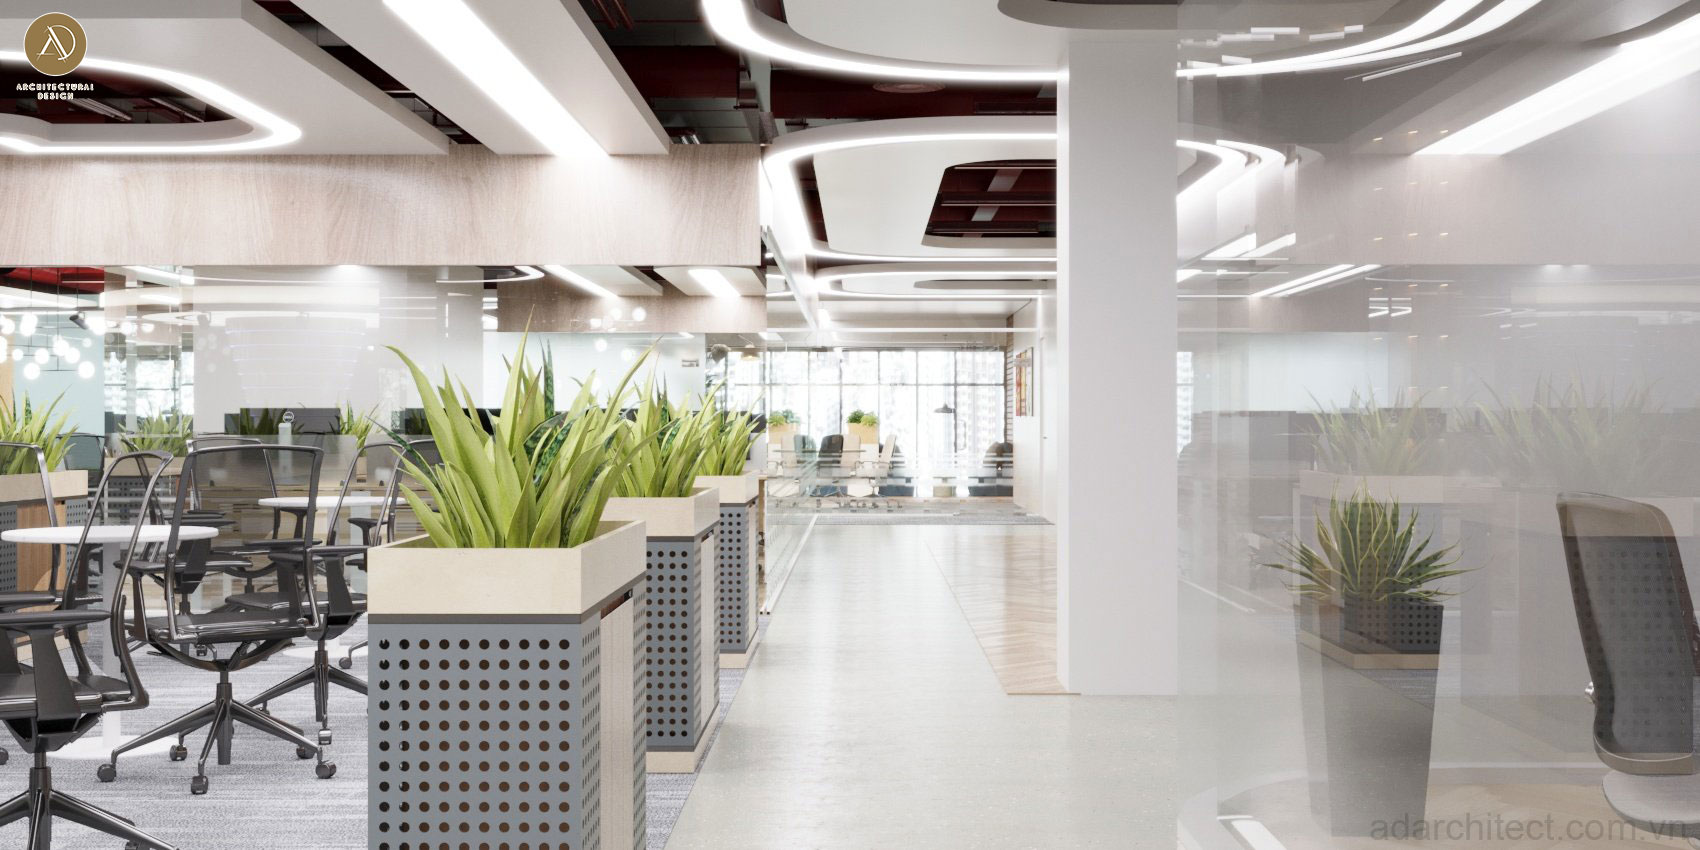 Thiết kế văn phòng công ty có bố trí cây xanh giúp sảng khoái tinh thần khi làm việc